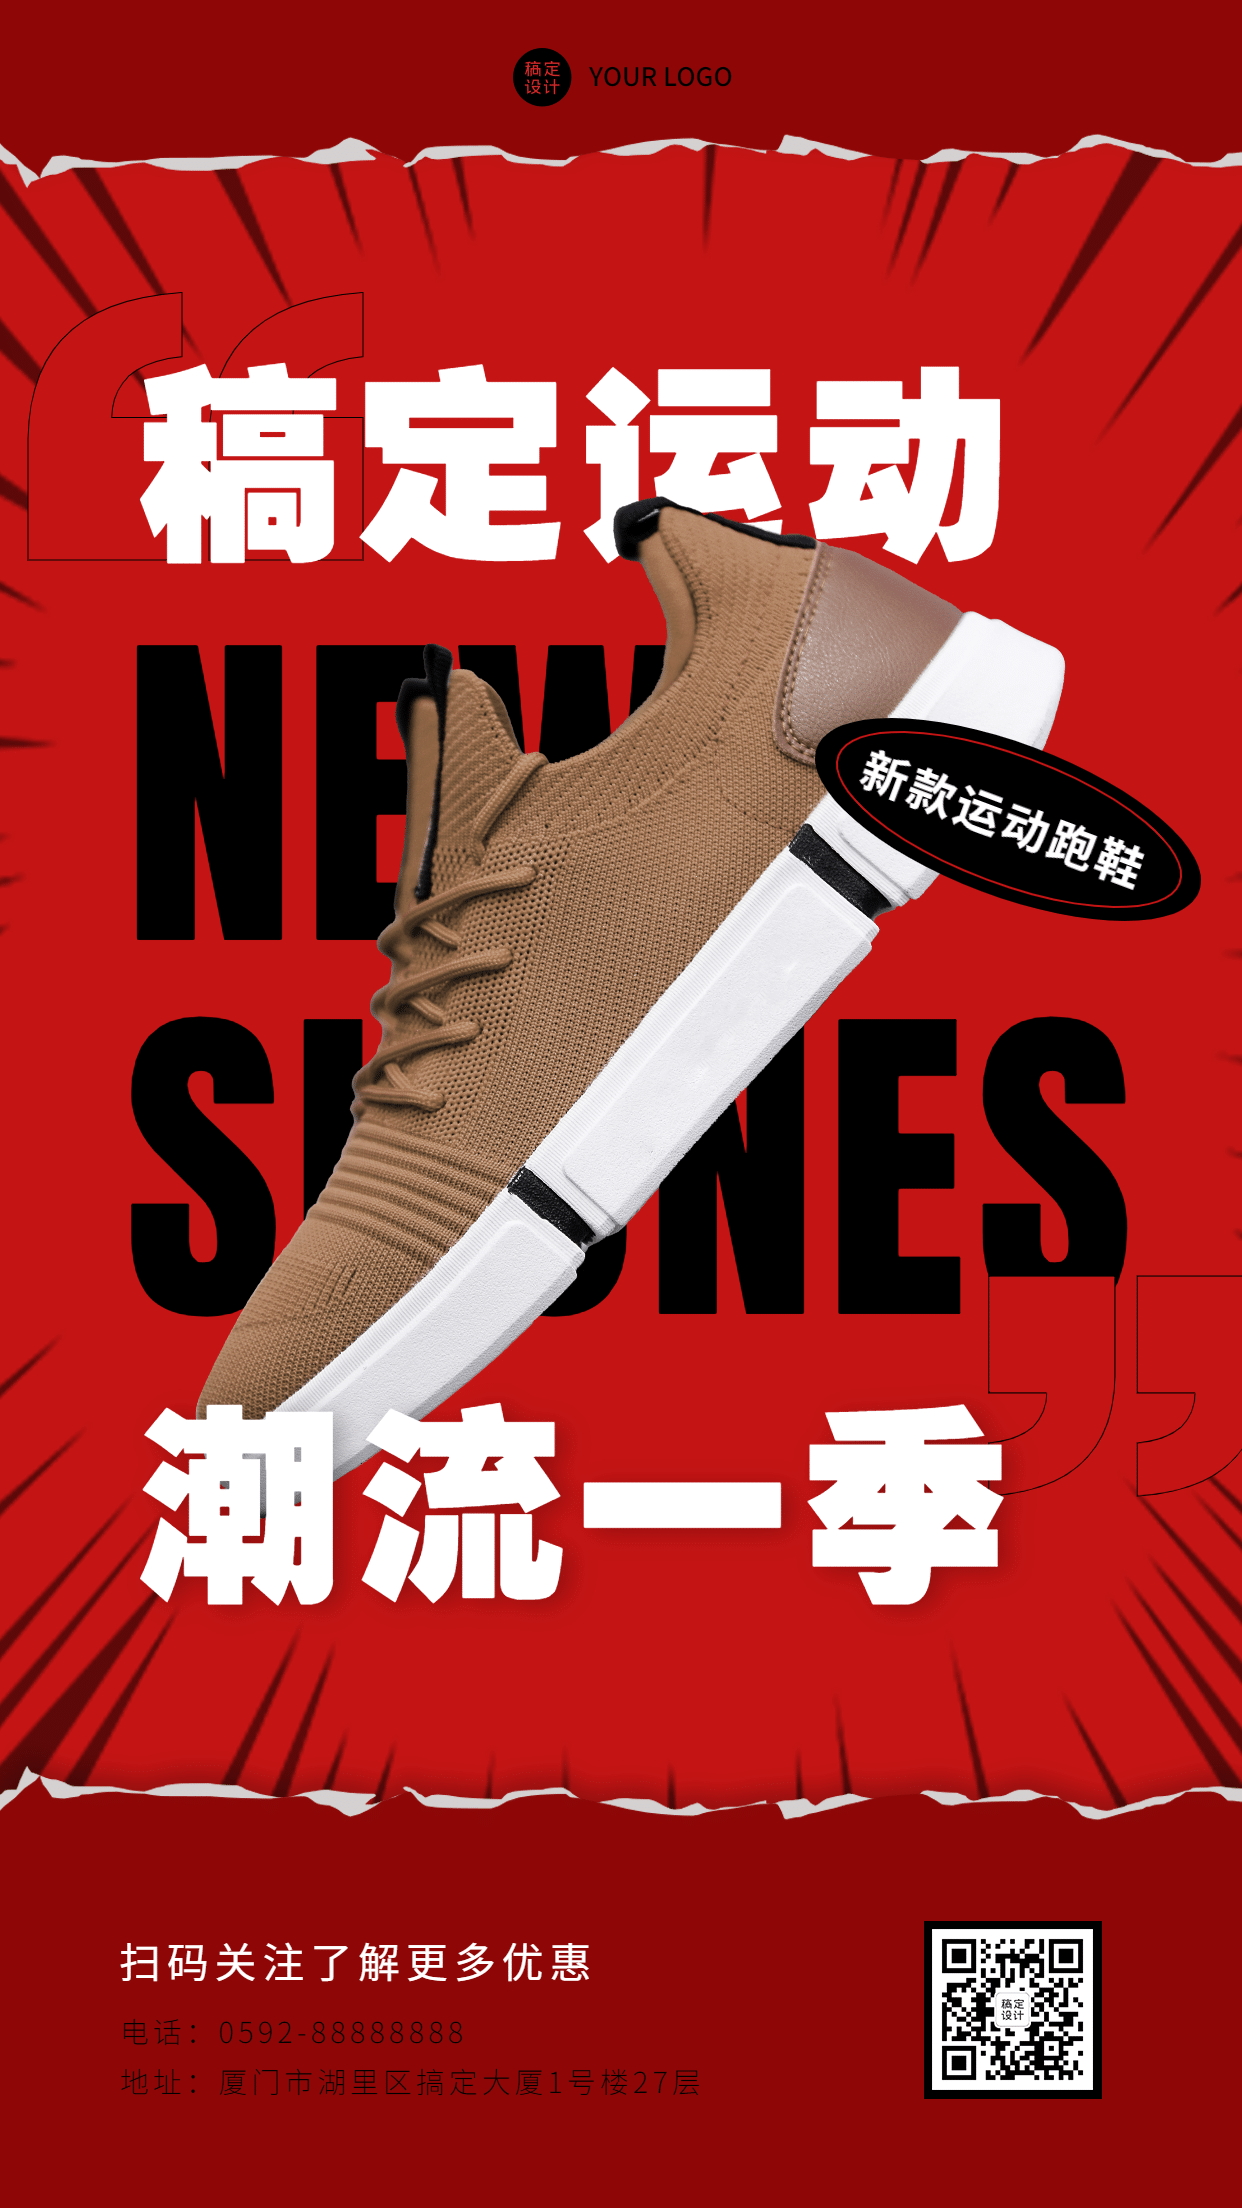 运动鞋品牌产品展示手机海报